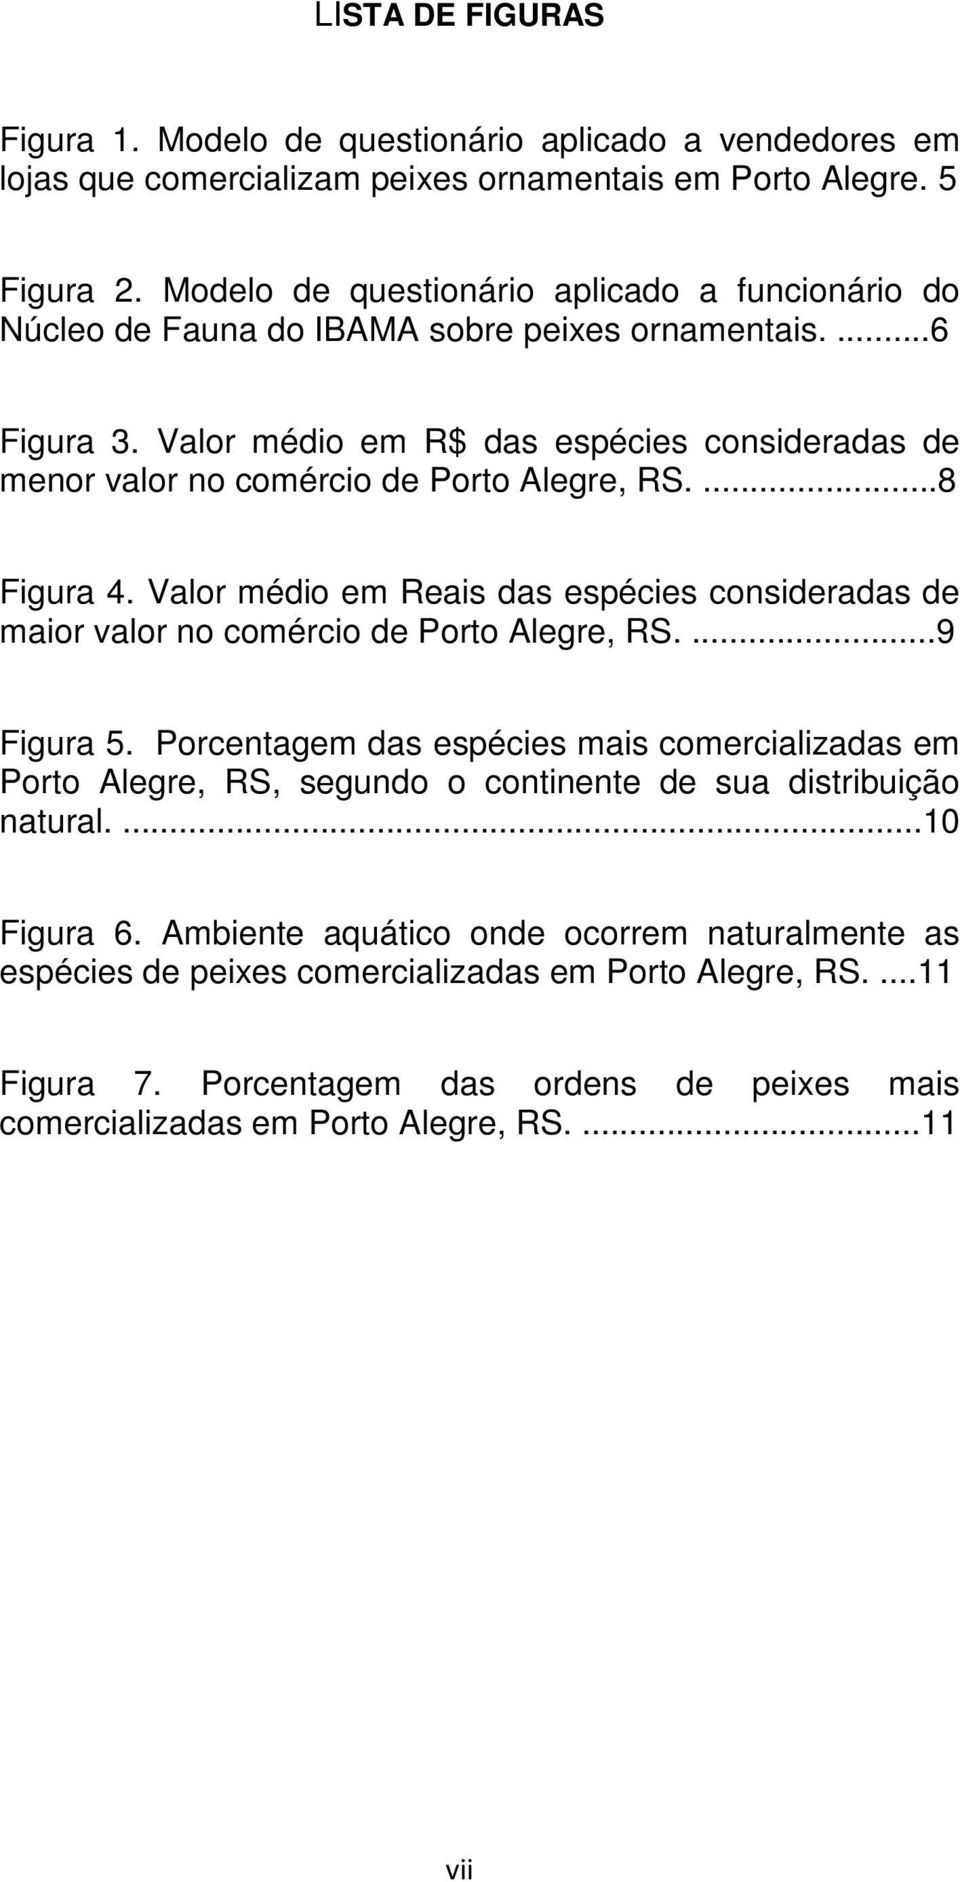 Valor médio em R$ das espécies consideradas de menor valor no comércio de Porto Alegre, RS....8 Figura 4. Valor médio em Reais das espécies consideradas de maior valor no comércio de Porto Alegre, RS.